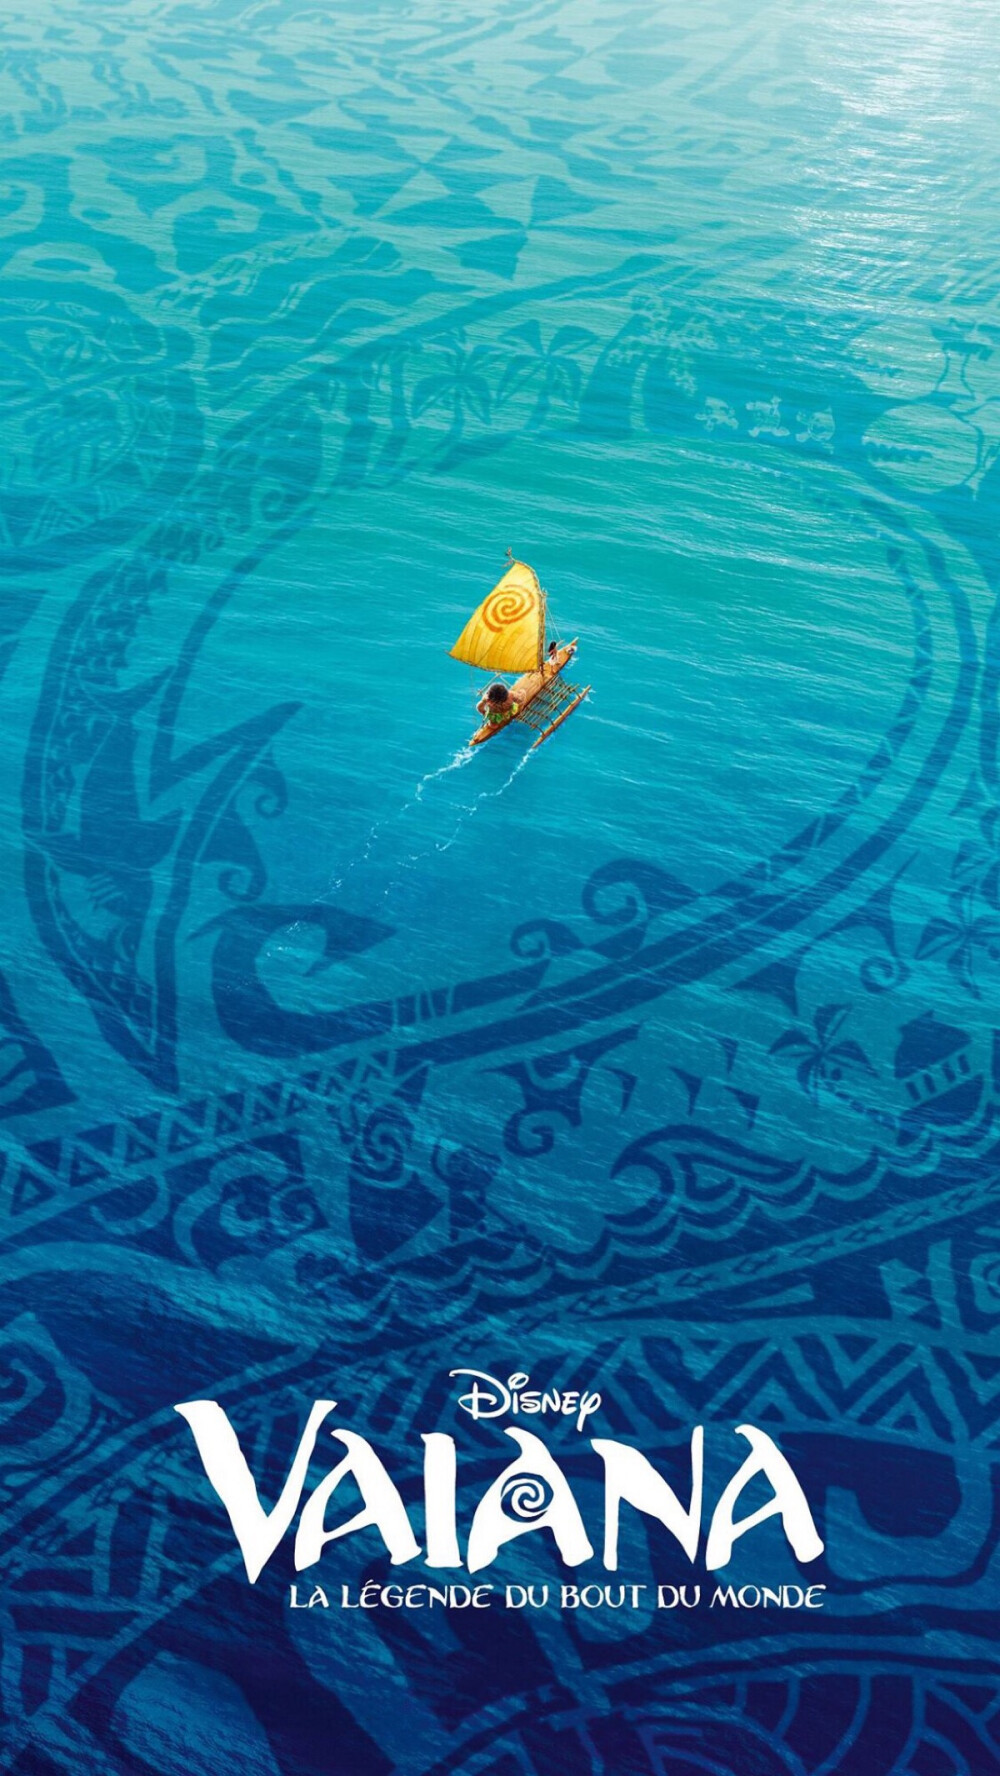 《海洋奇缘》电影海报,迪士尼出品